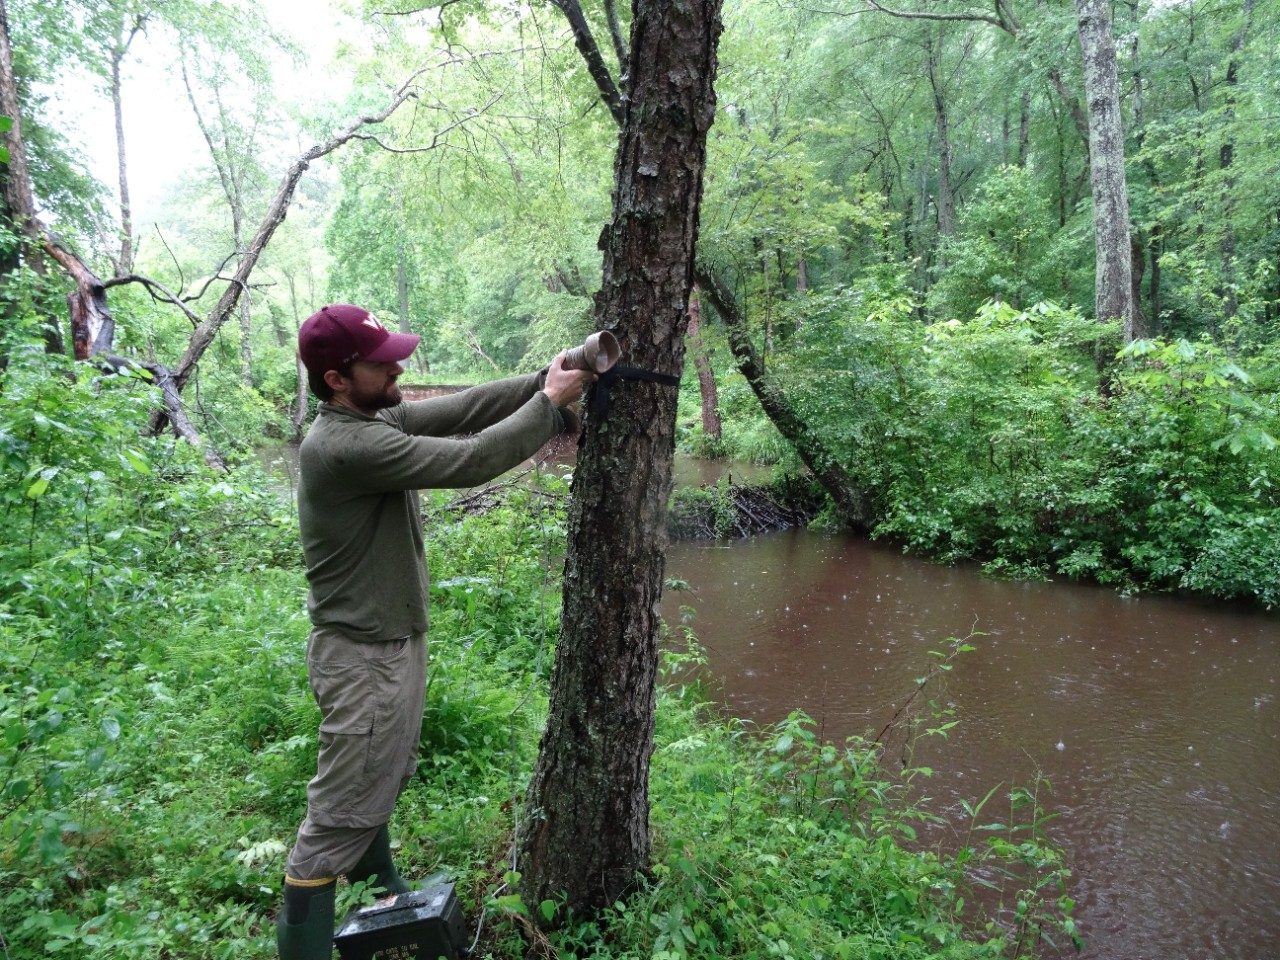 Nick Kalen installing a bat detector along a stream